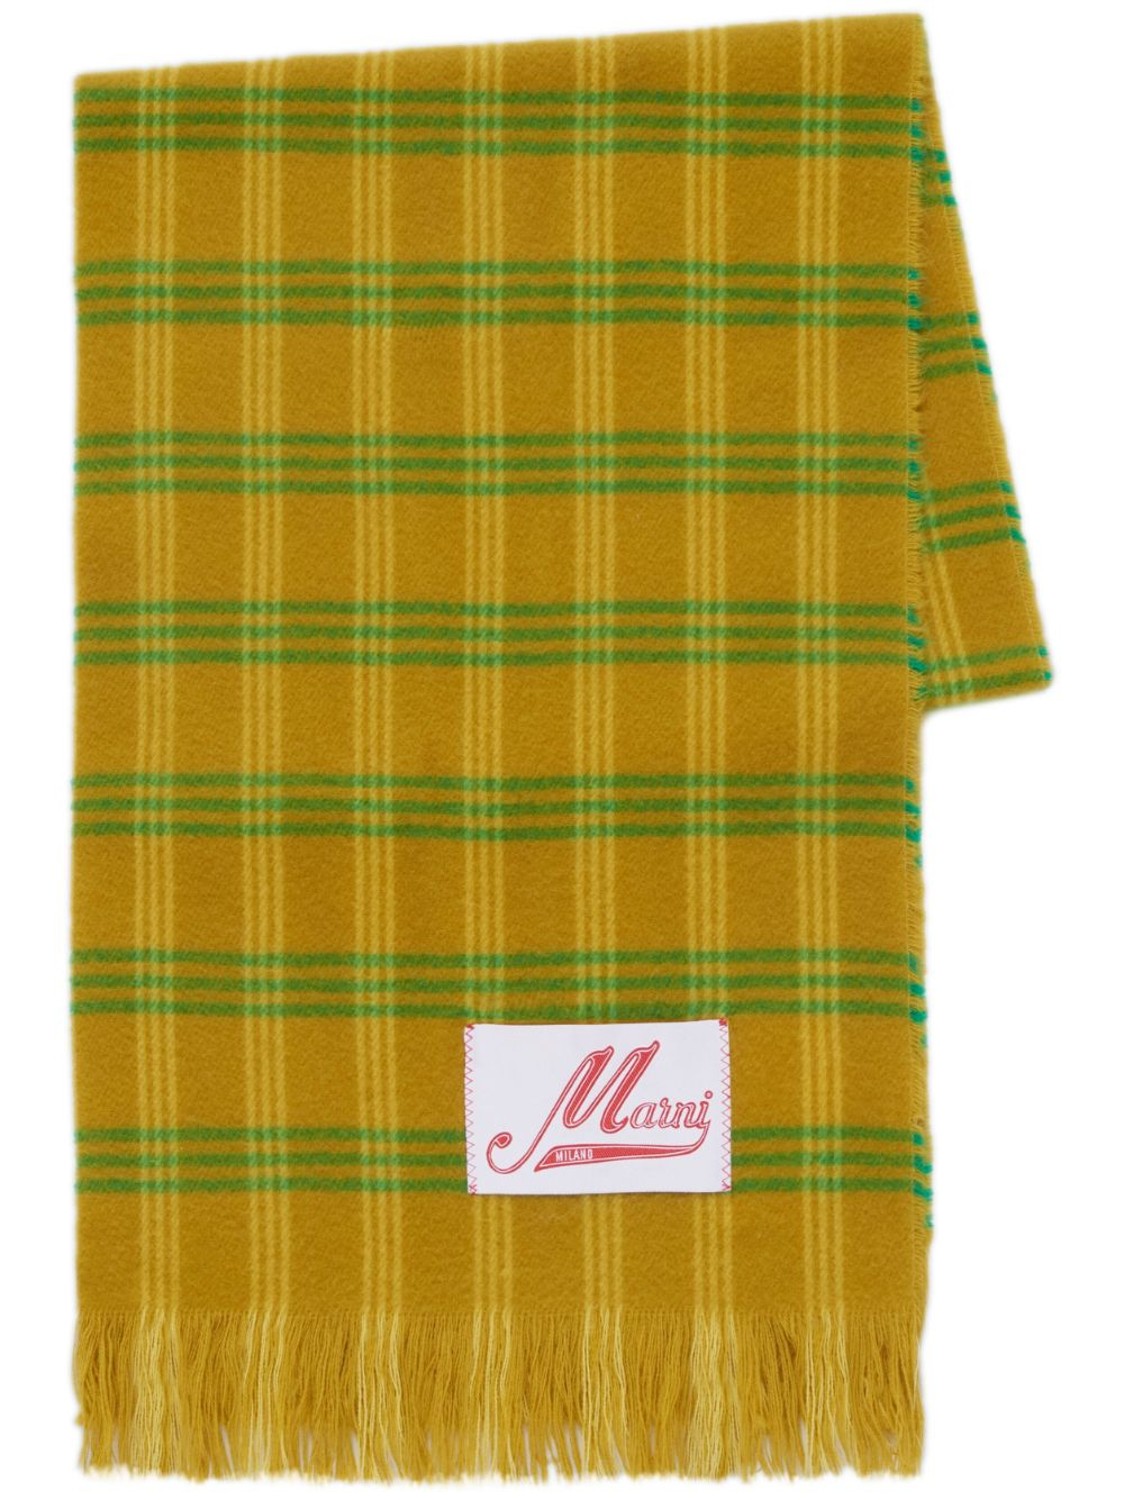 shop Marni  Accessori: Accessori Marni, sciarpa, lunga, a quadri verdi su fondo giallo senape.

Composizione: 100% lana vergine. number 2656